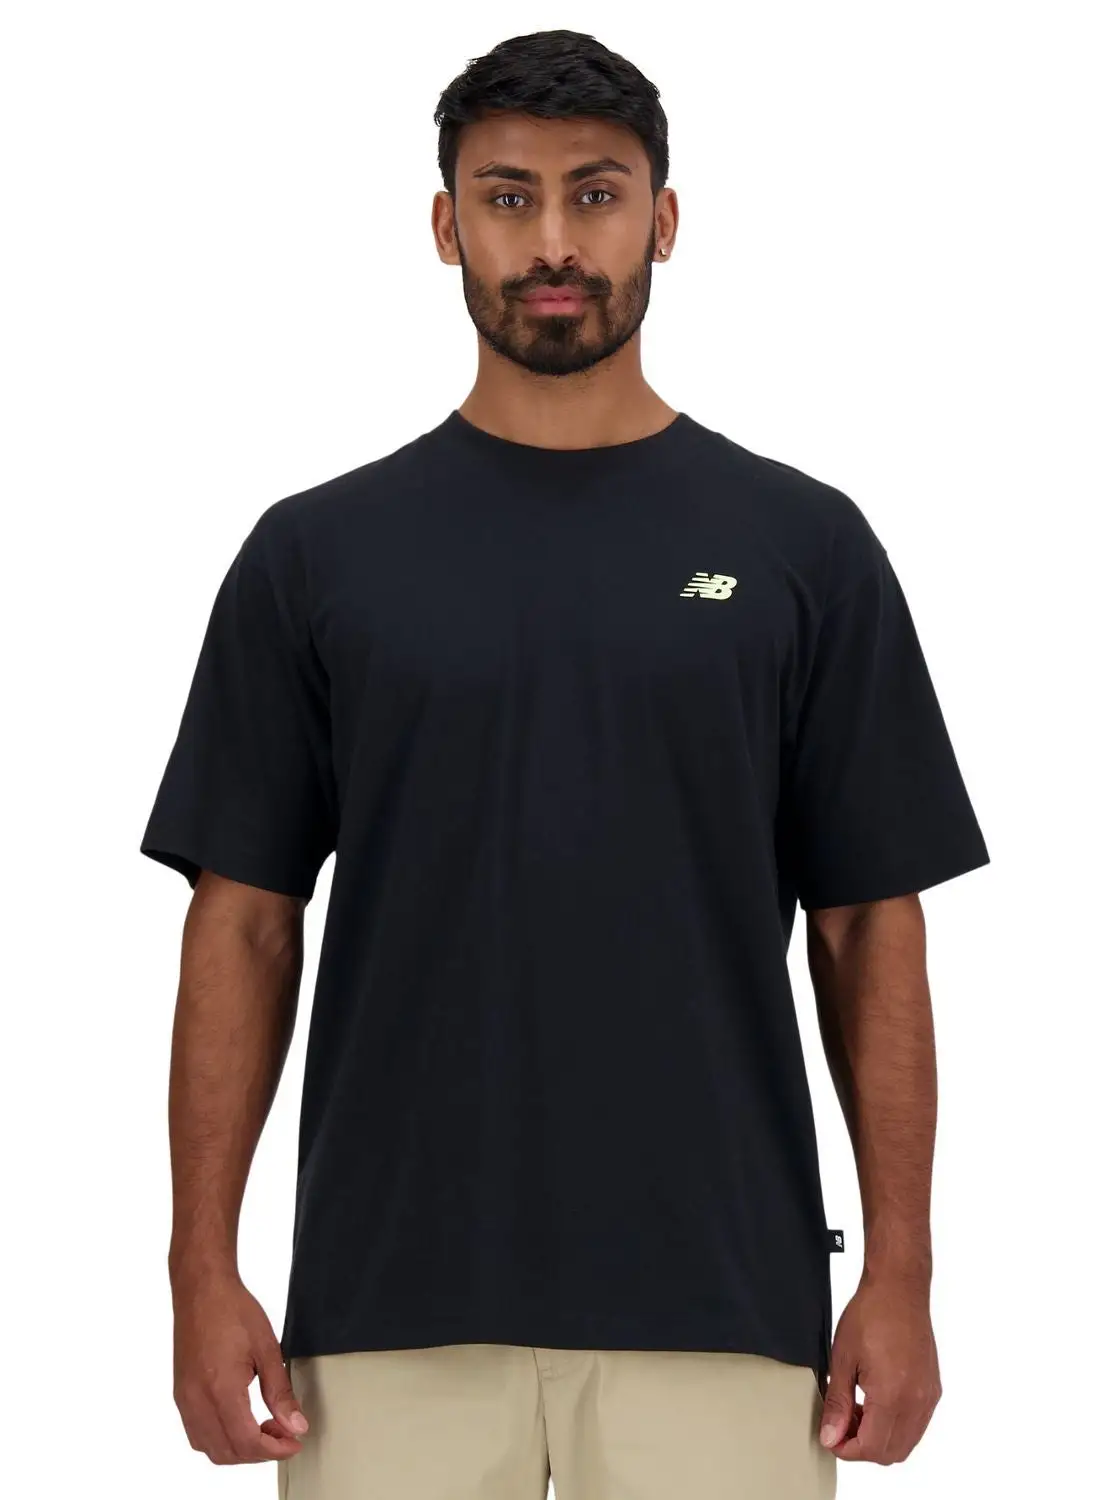 New Balance Runners T-Shirt